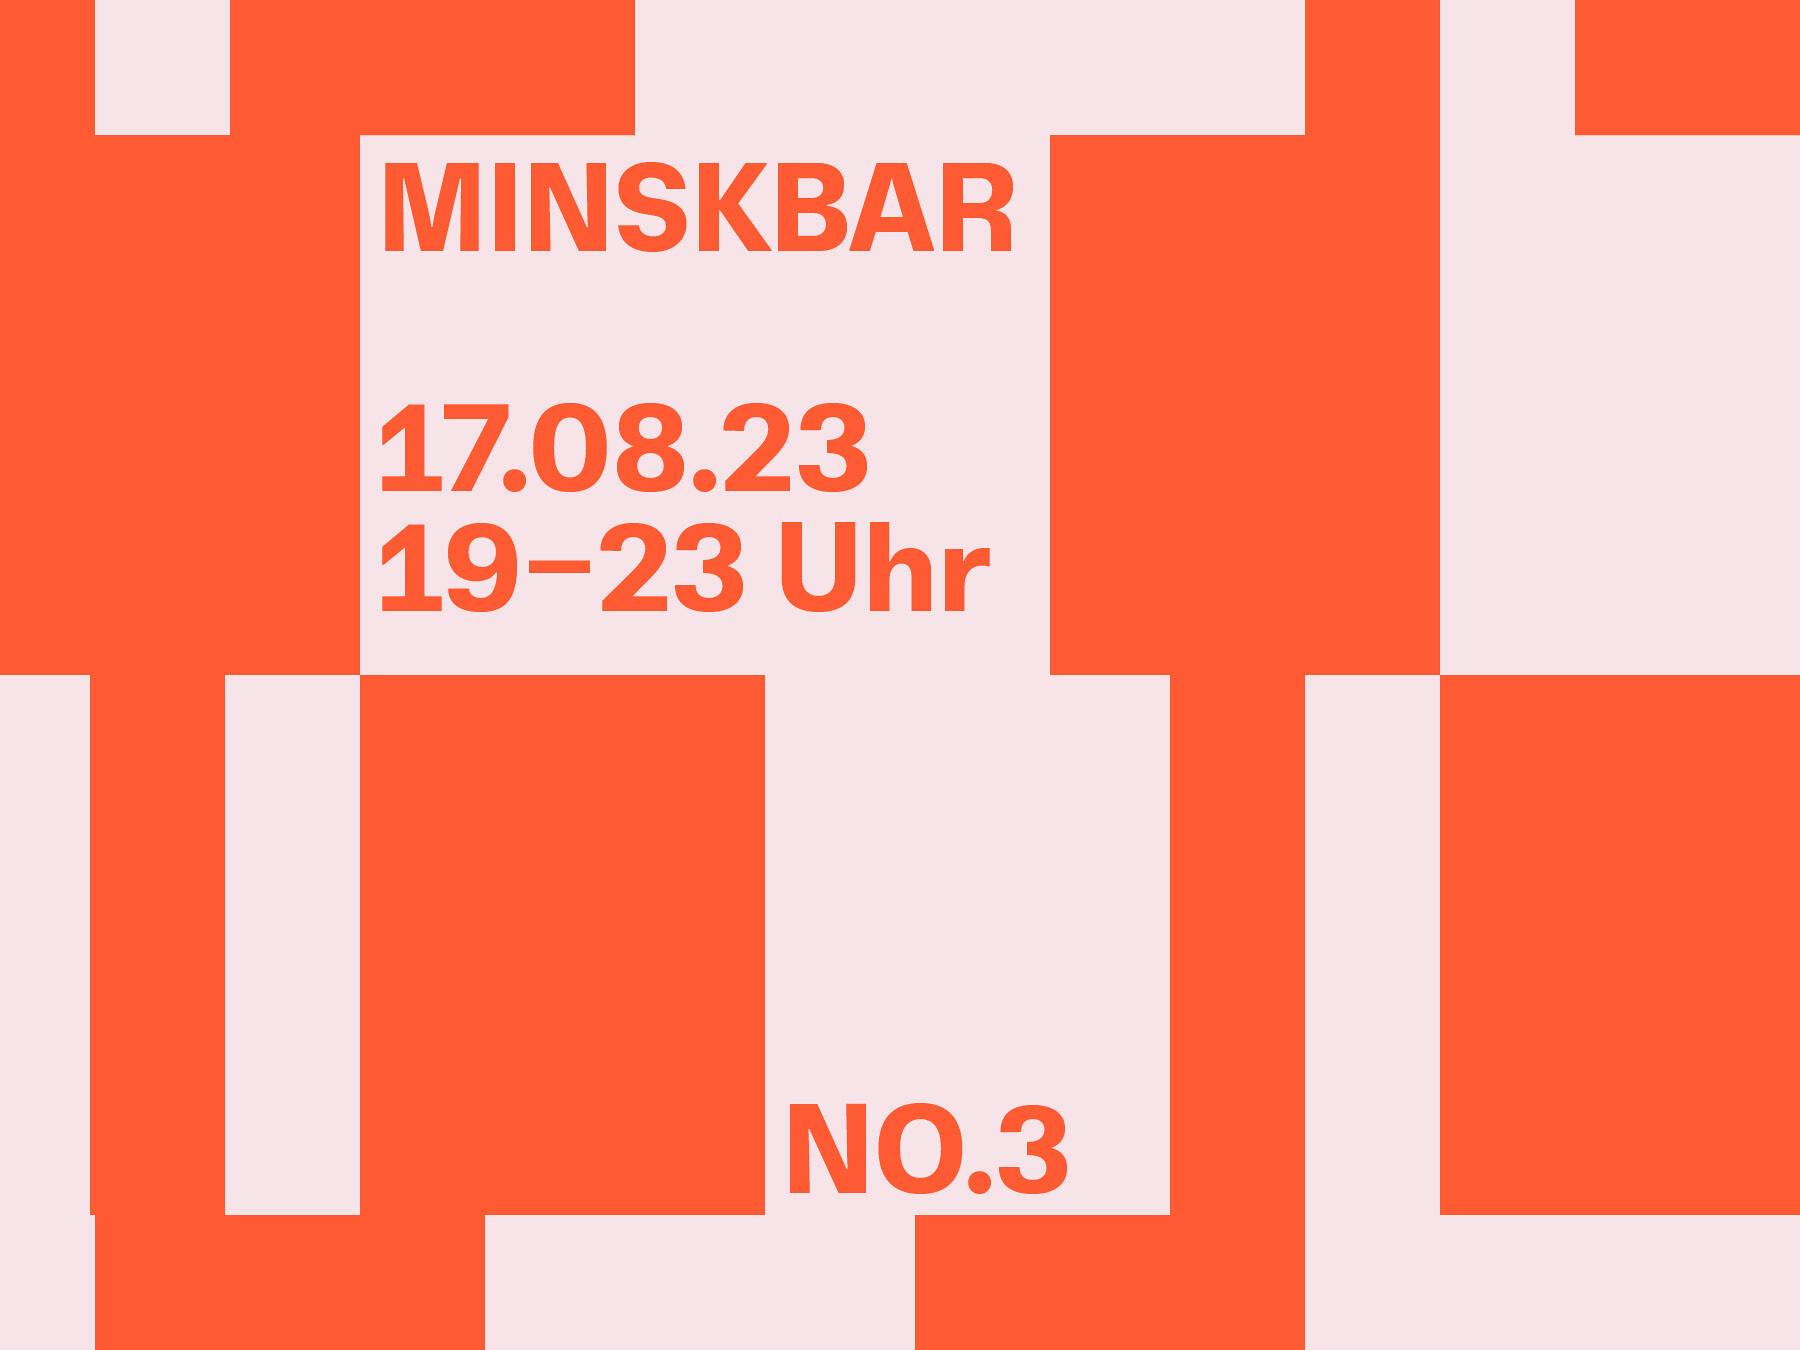 Minskbar No.3